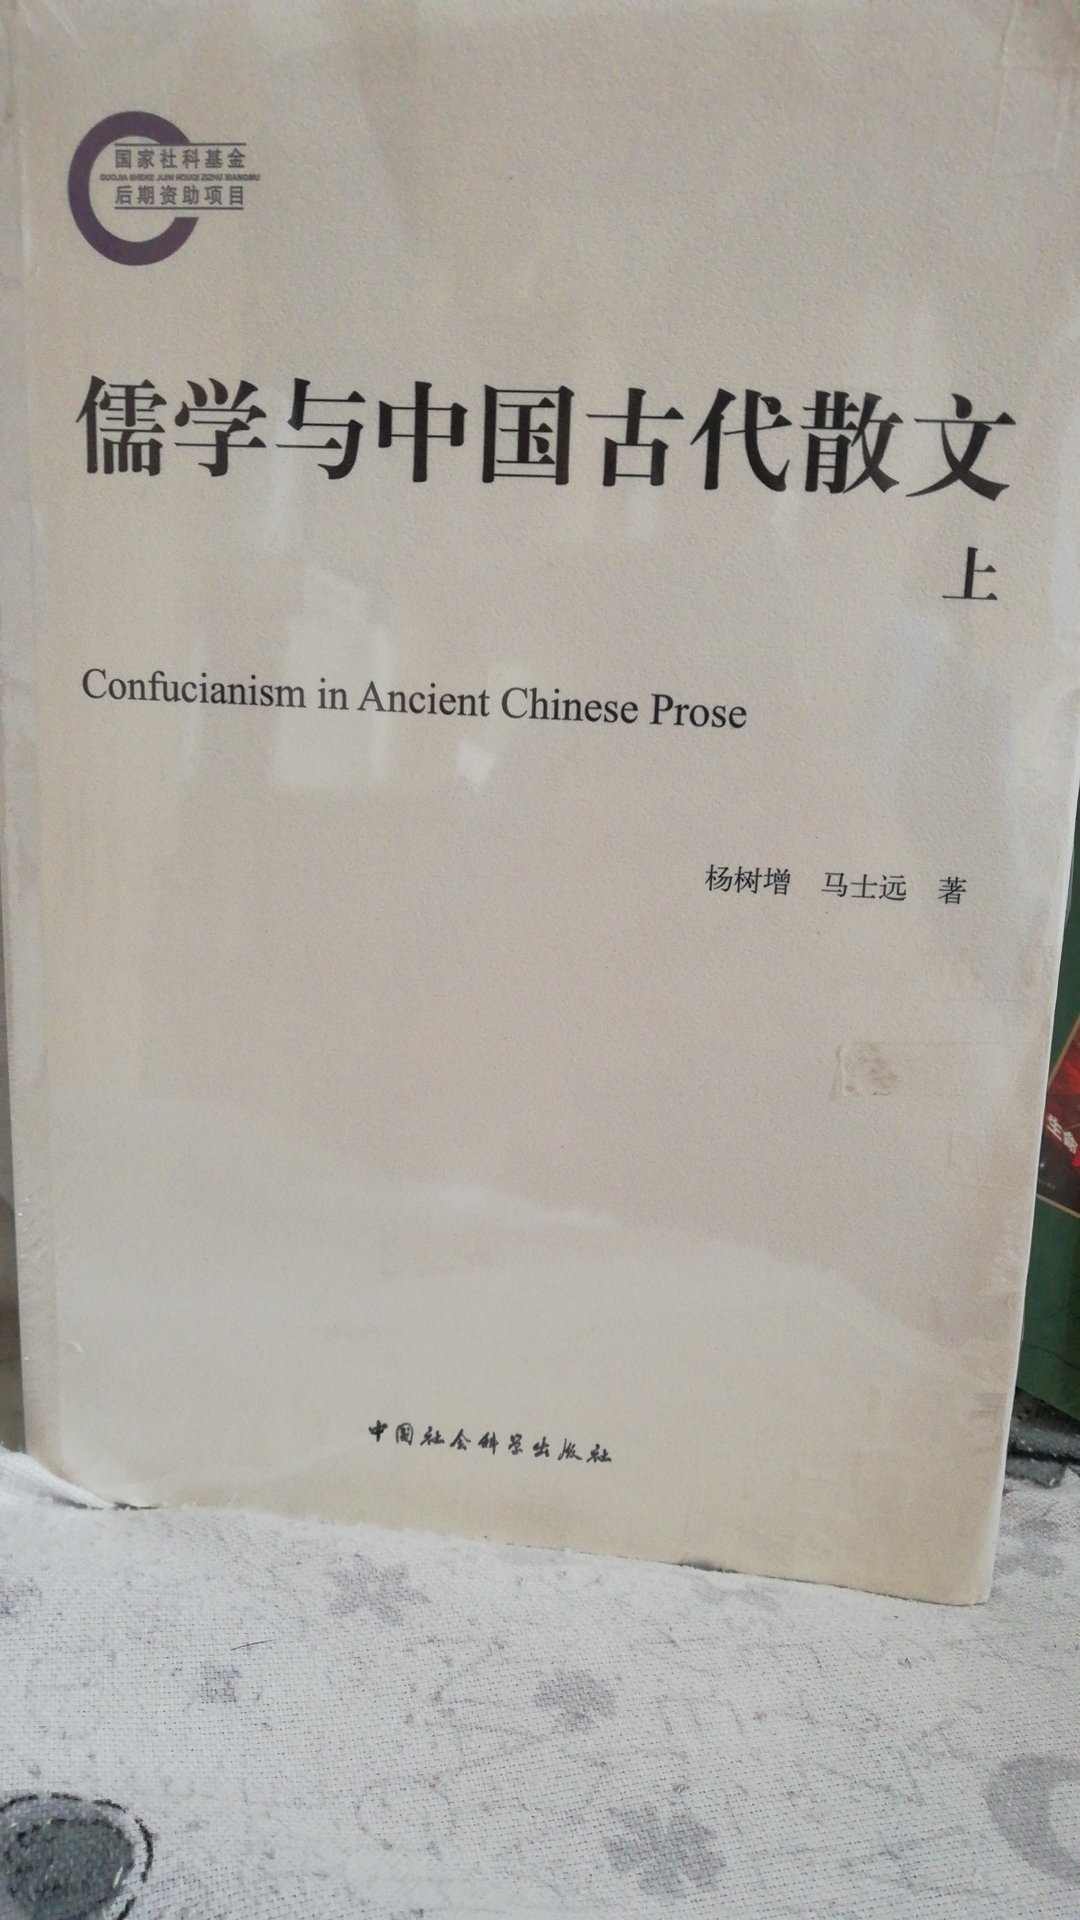 不错不错，研究中国学问永远离不开儒家思想！